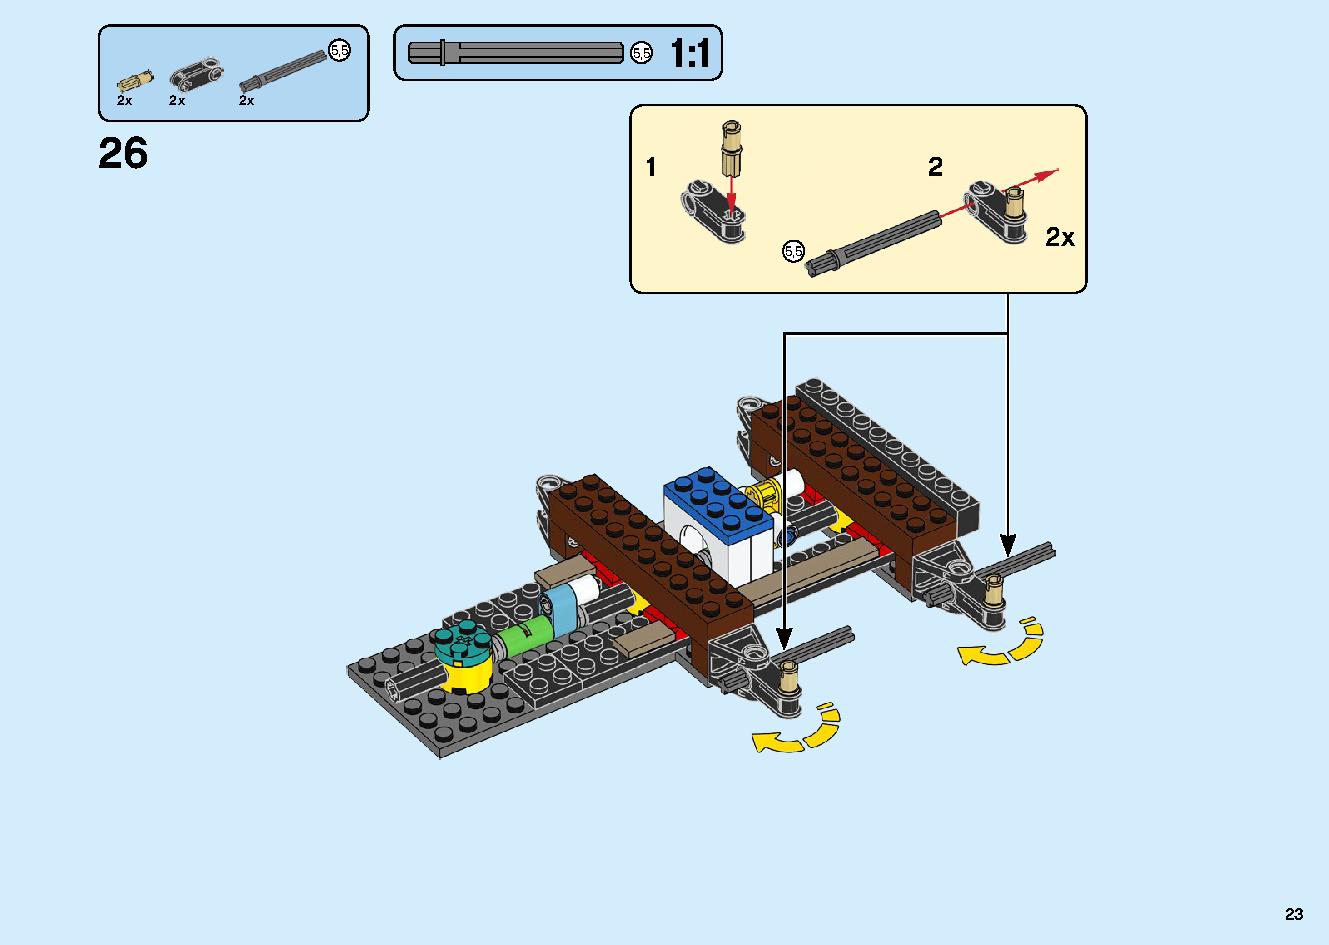 陸上戦艦バウンティ号 70677 レゴの商品情報 レゴの説明書・組立方法 23 page